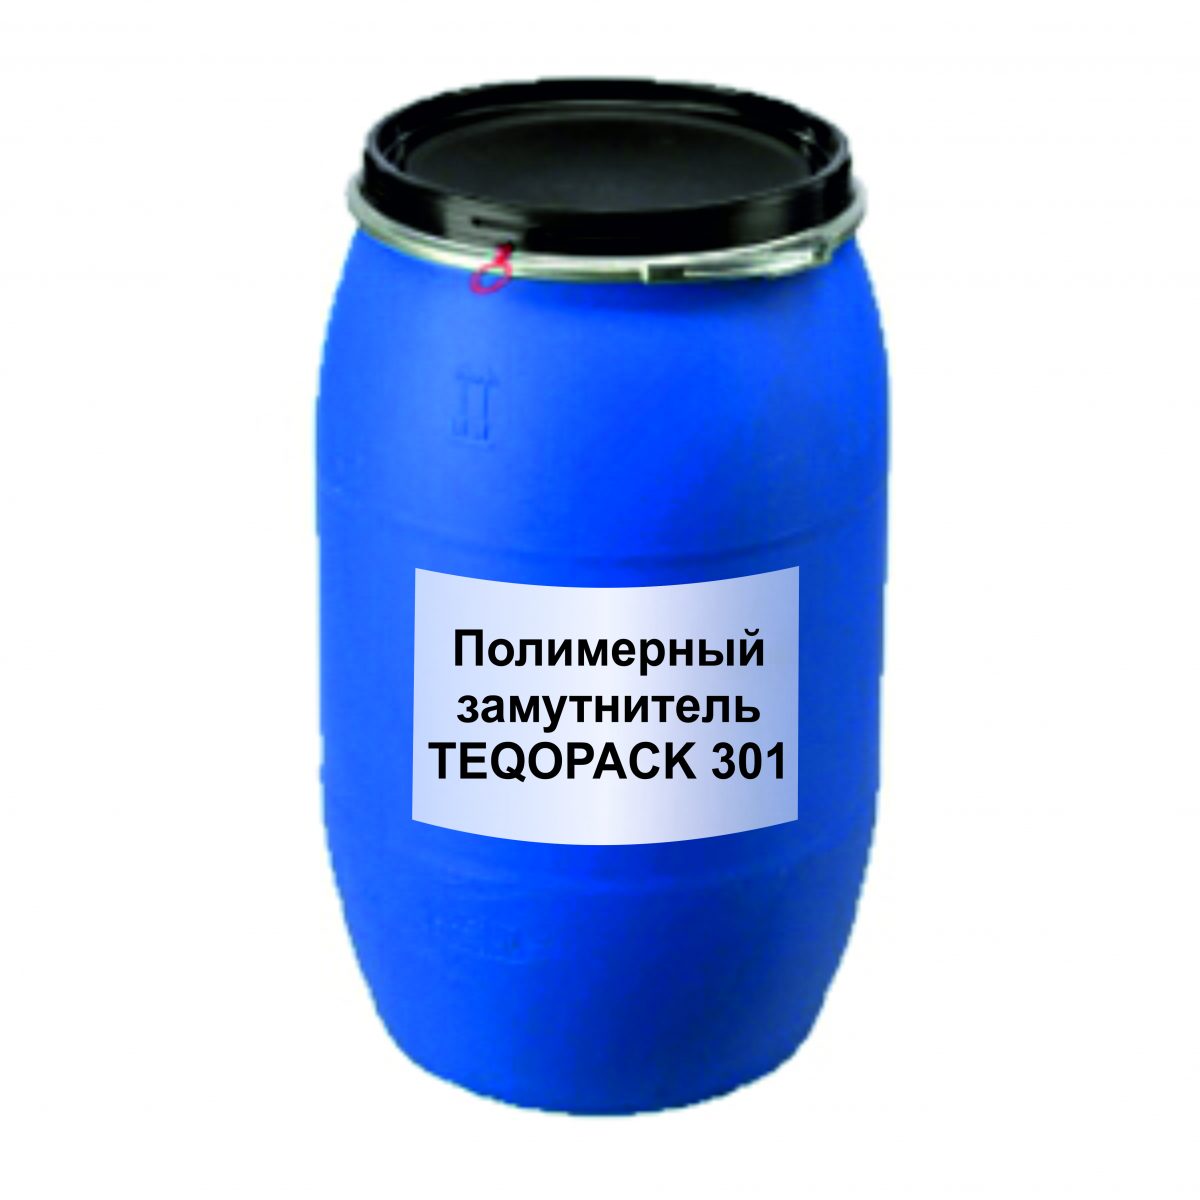 Полимерный замутнитель TEQOPACK 301 /бочка 120 кг